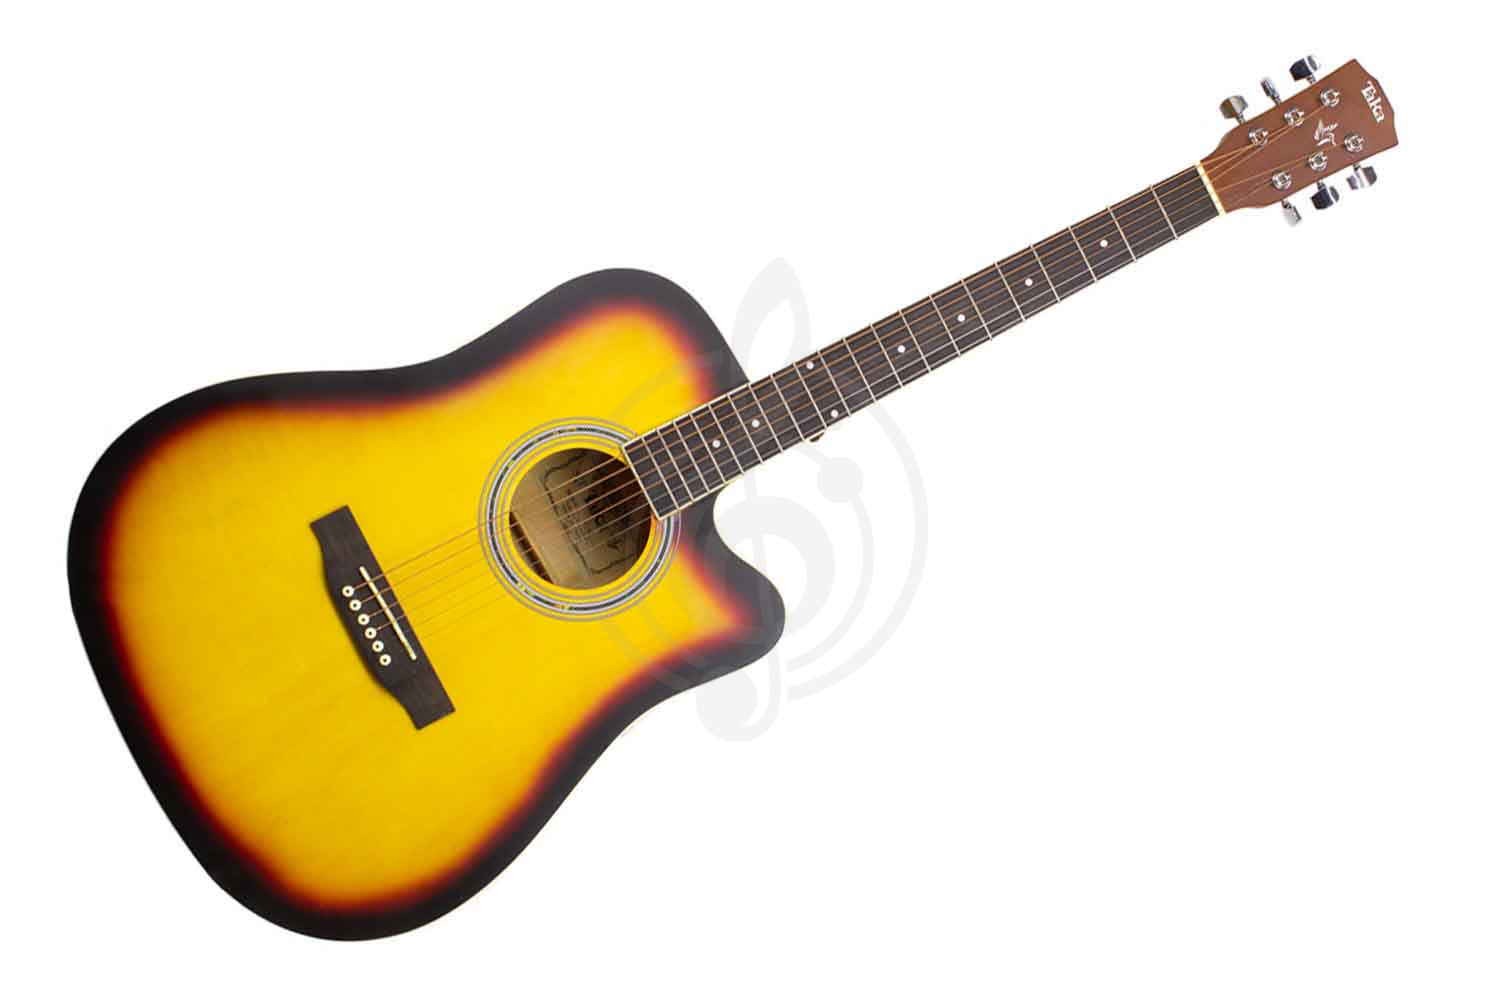 Акустическая гитара Акустические гитары TAKA TAKA 41ACSB - акустическая гитара 41ACSB - фото 1